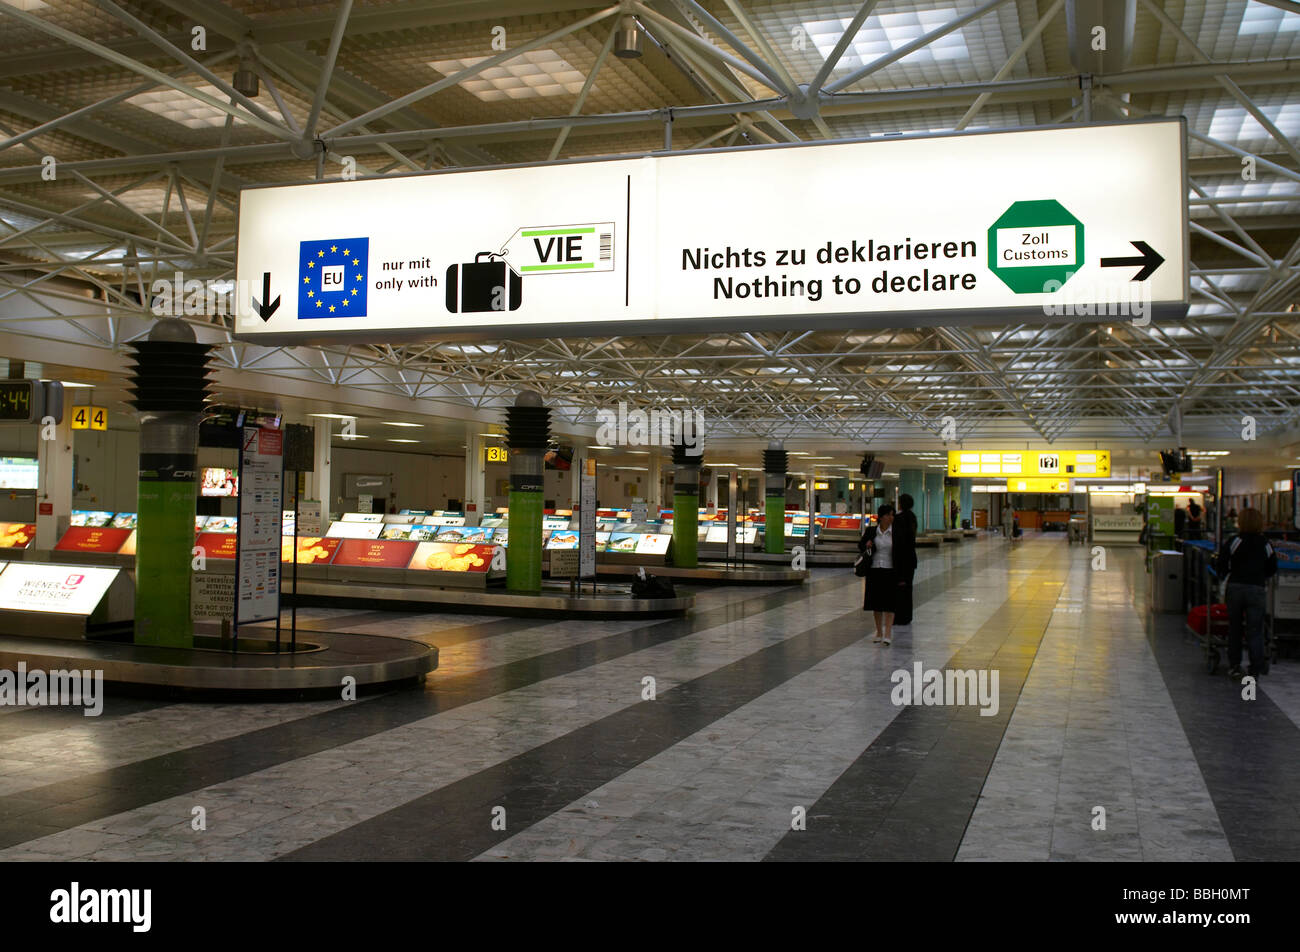 Gepäckausgabe Hall im Abflugterminal des internationalen Flughafen Wien  Stockfotografie - Alamy